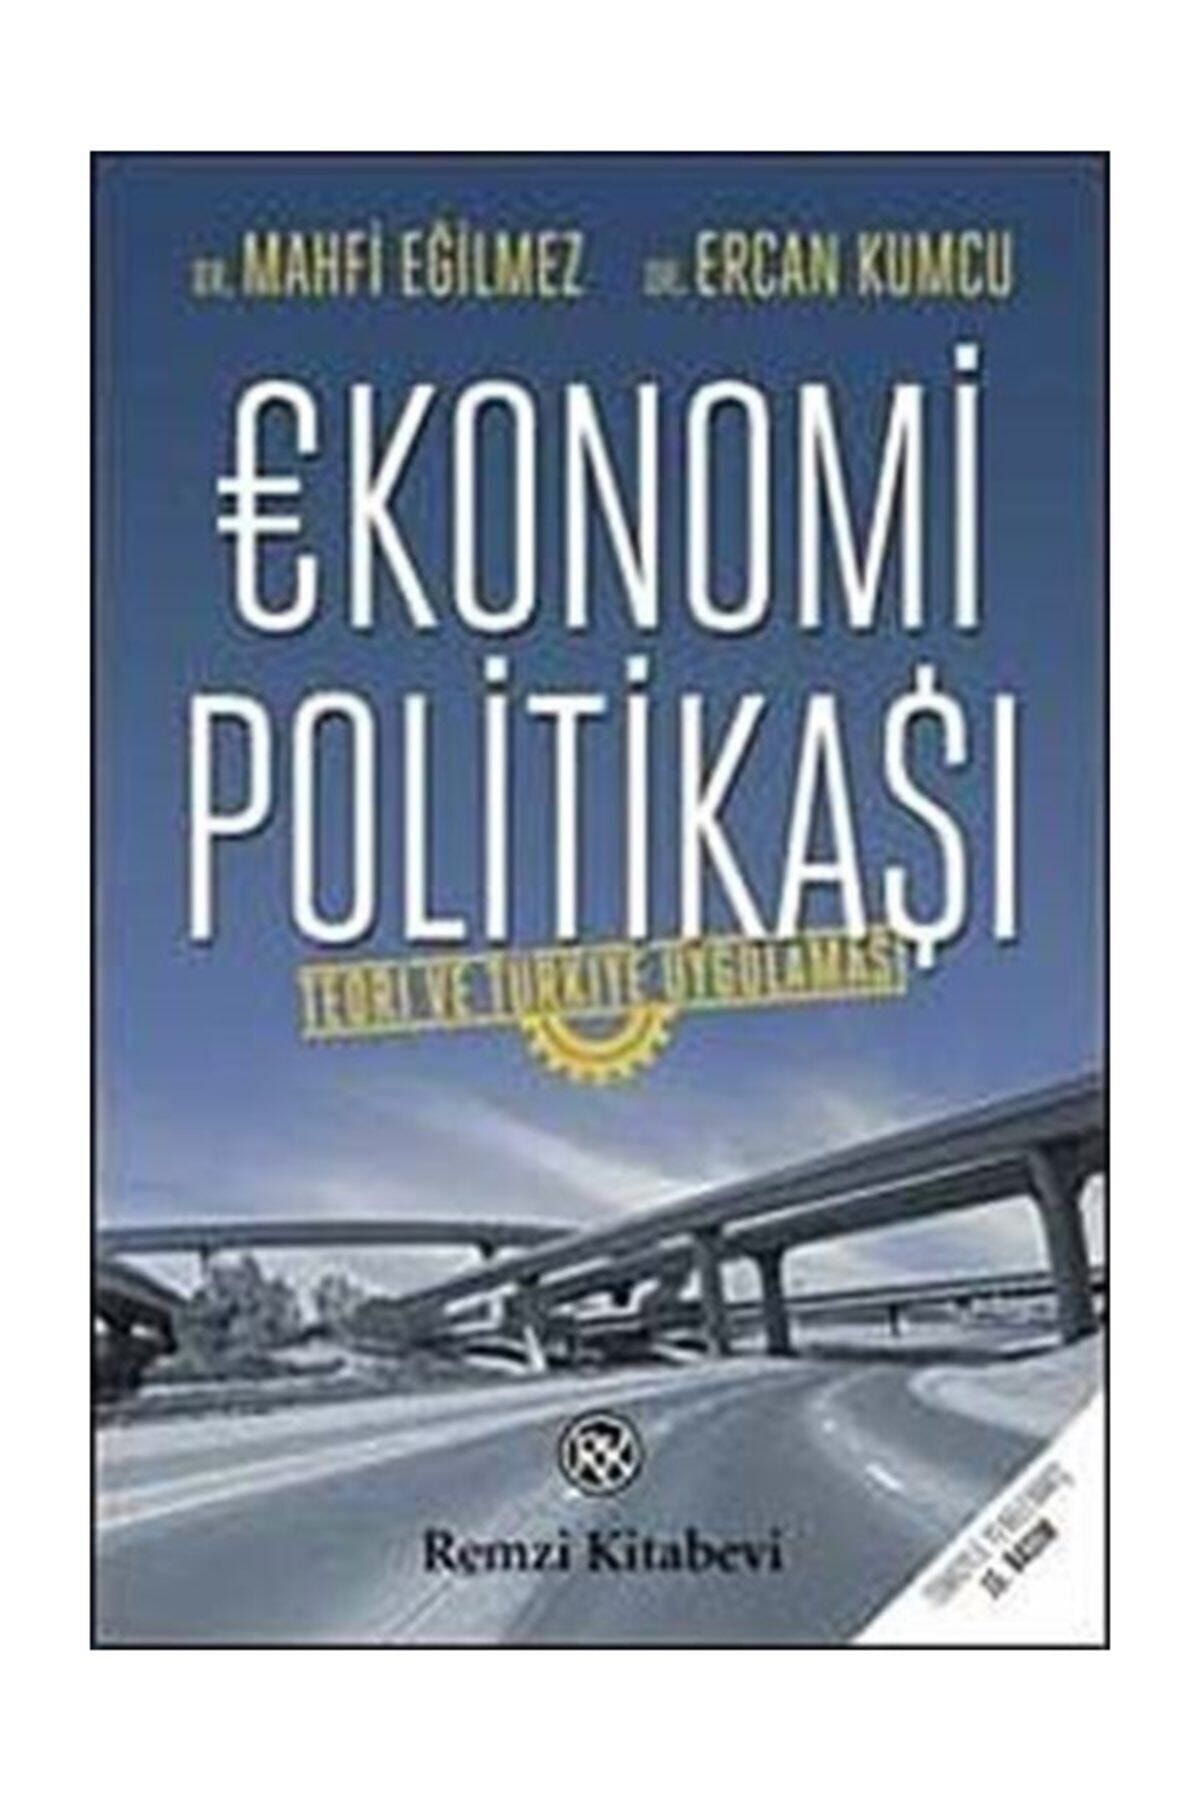 Remzi Kitabevi Ekonomi Politikası (teori Ve Türkiye Uygulaması) -mahfi Eğilmez, Ercan Kumcu -